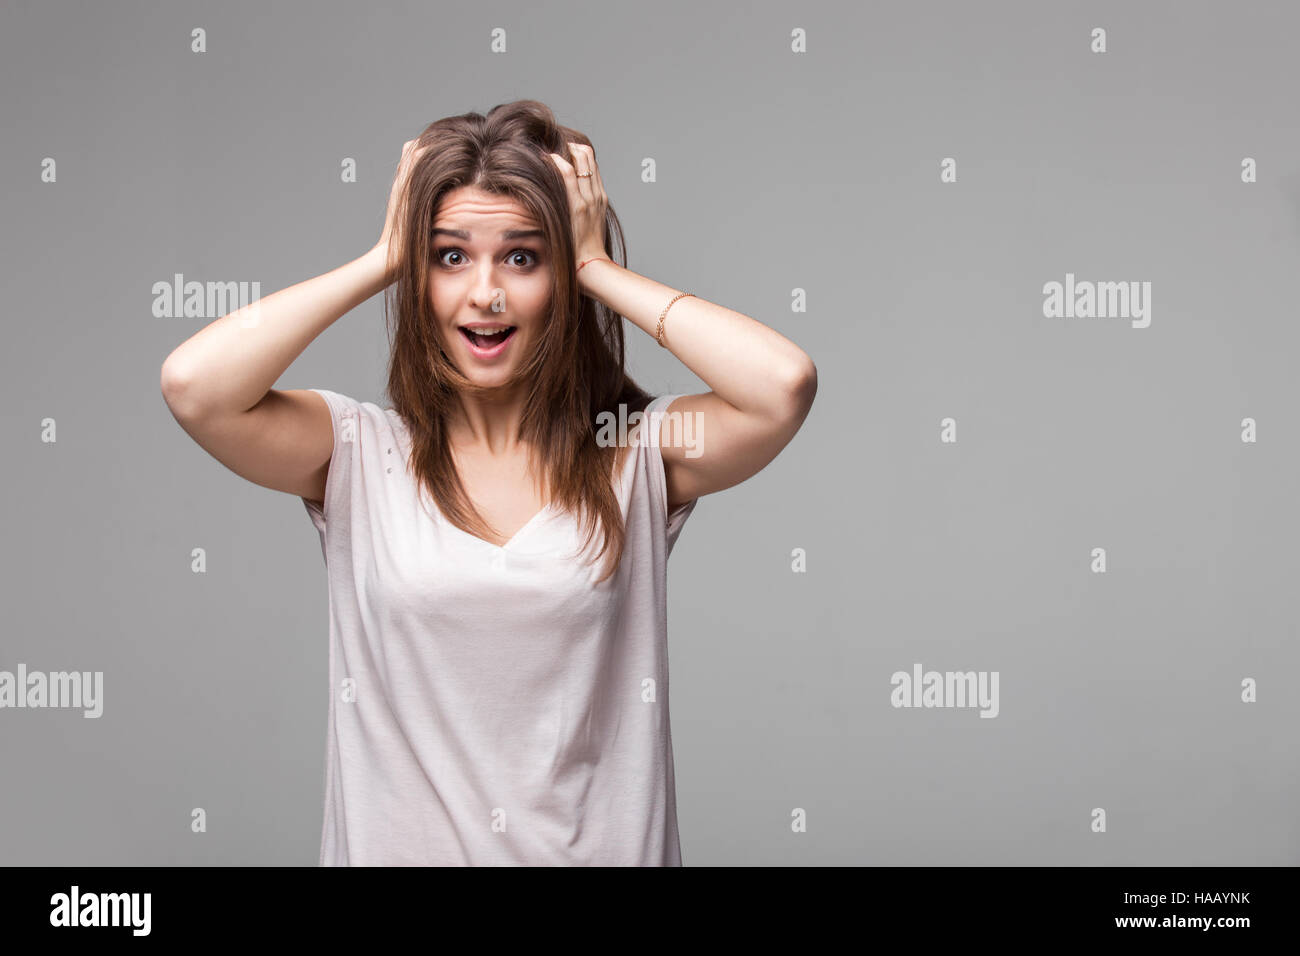 Ritratto di bella bruna donna con un espressione stupita in posa di studio su sfondo grigio Foto Stock